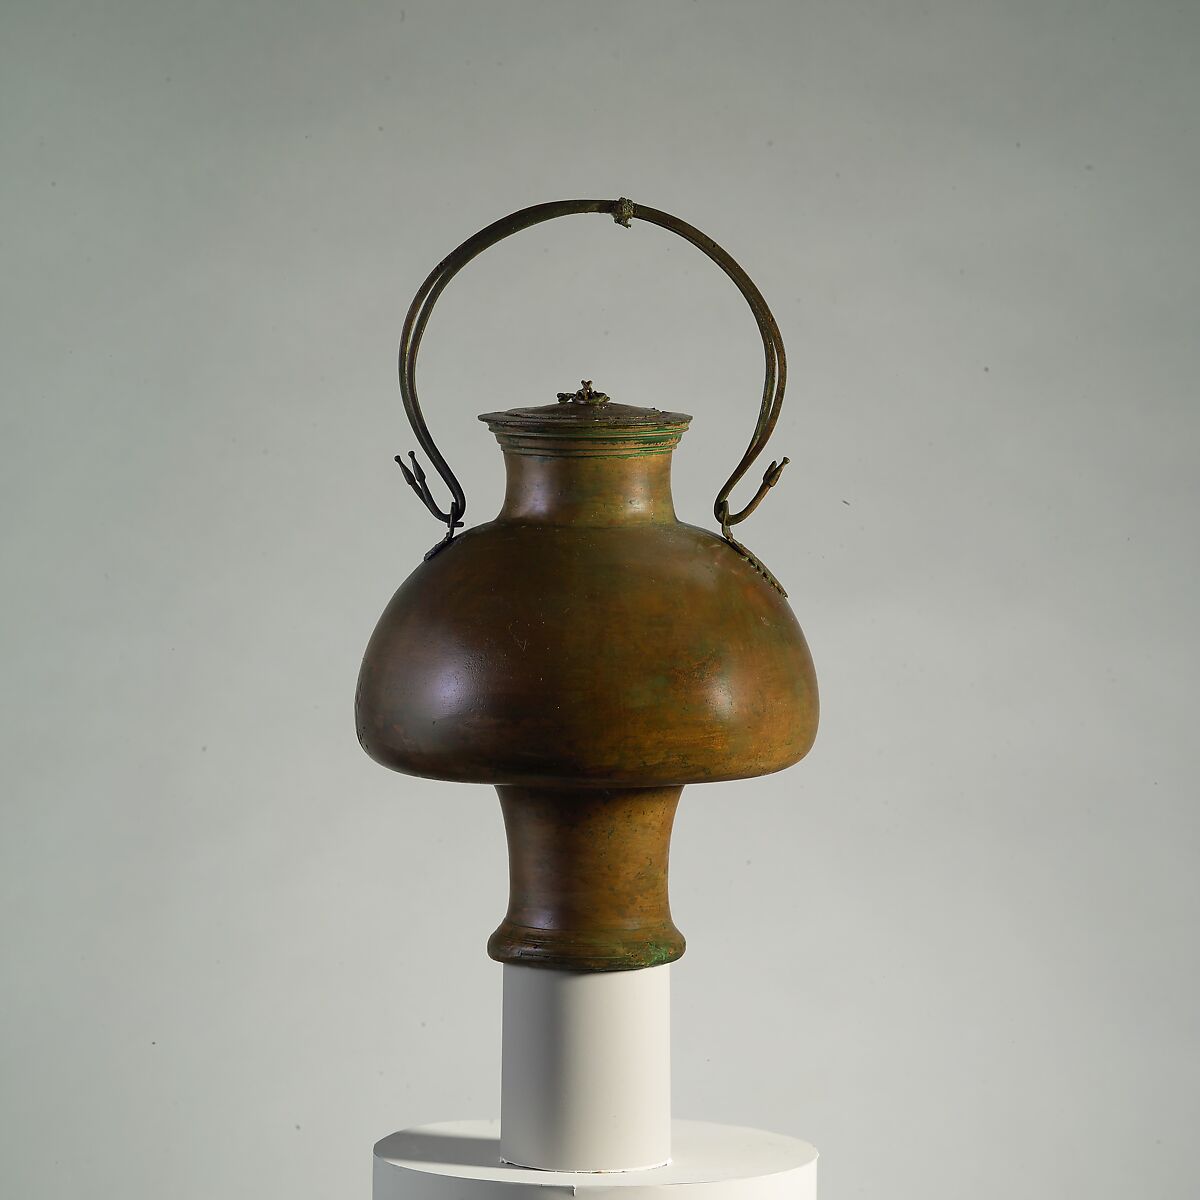 Bronze psykter with lid (vase for cooling wine), Bronze, Greek 